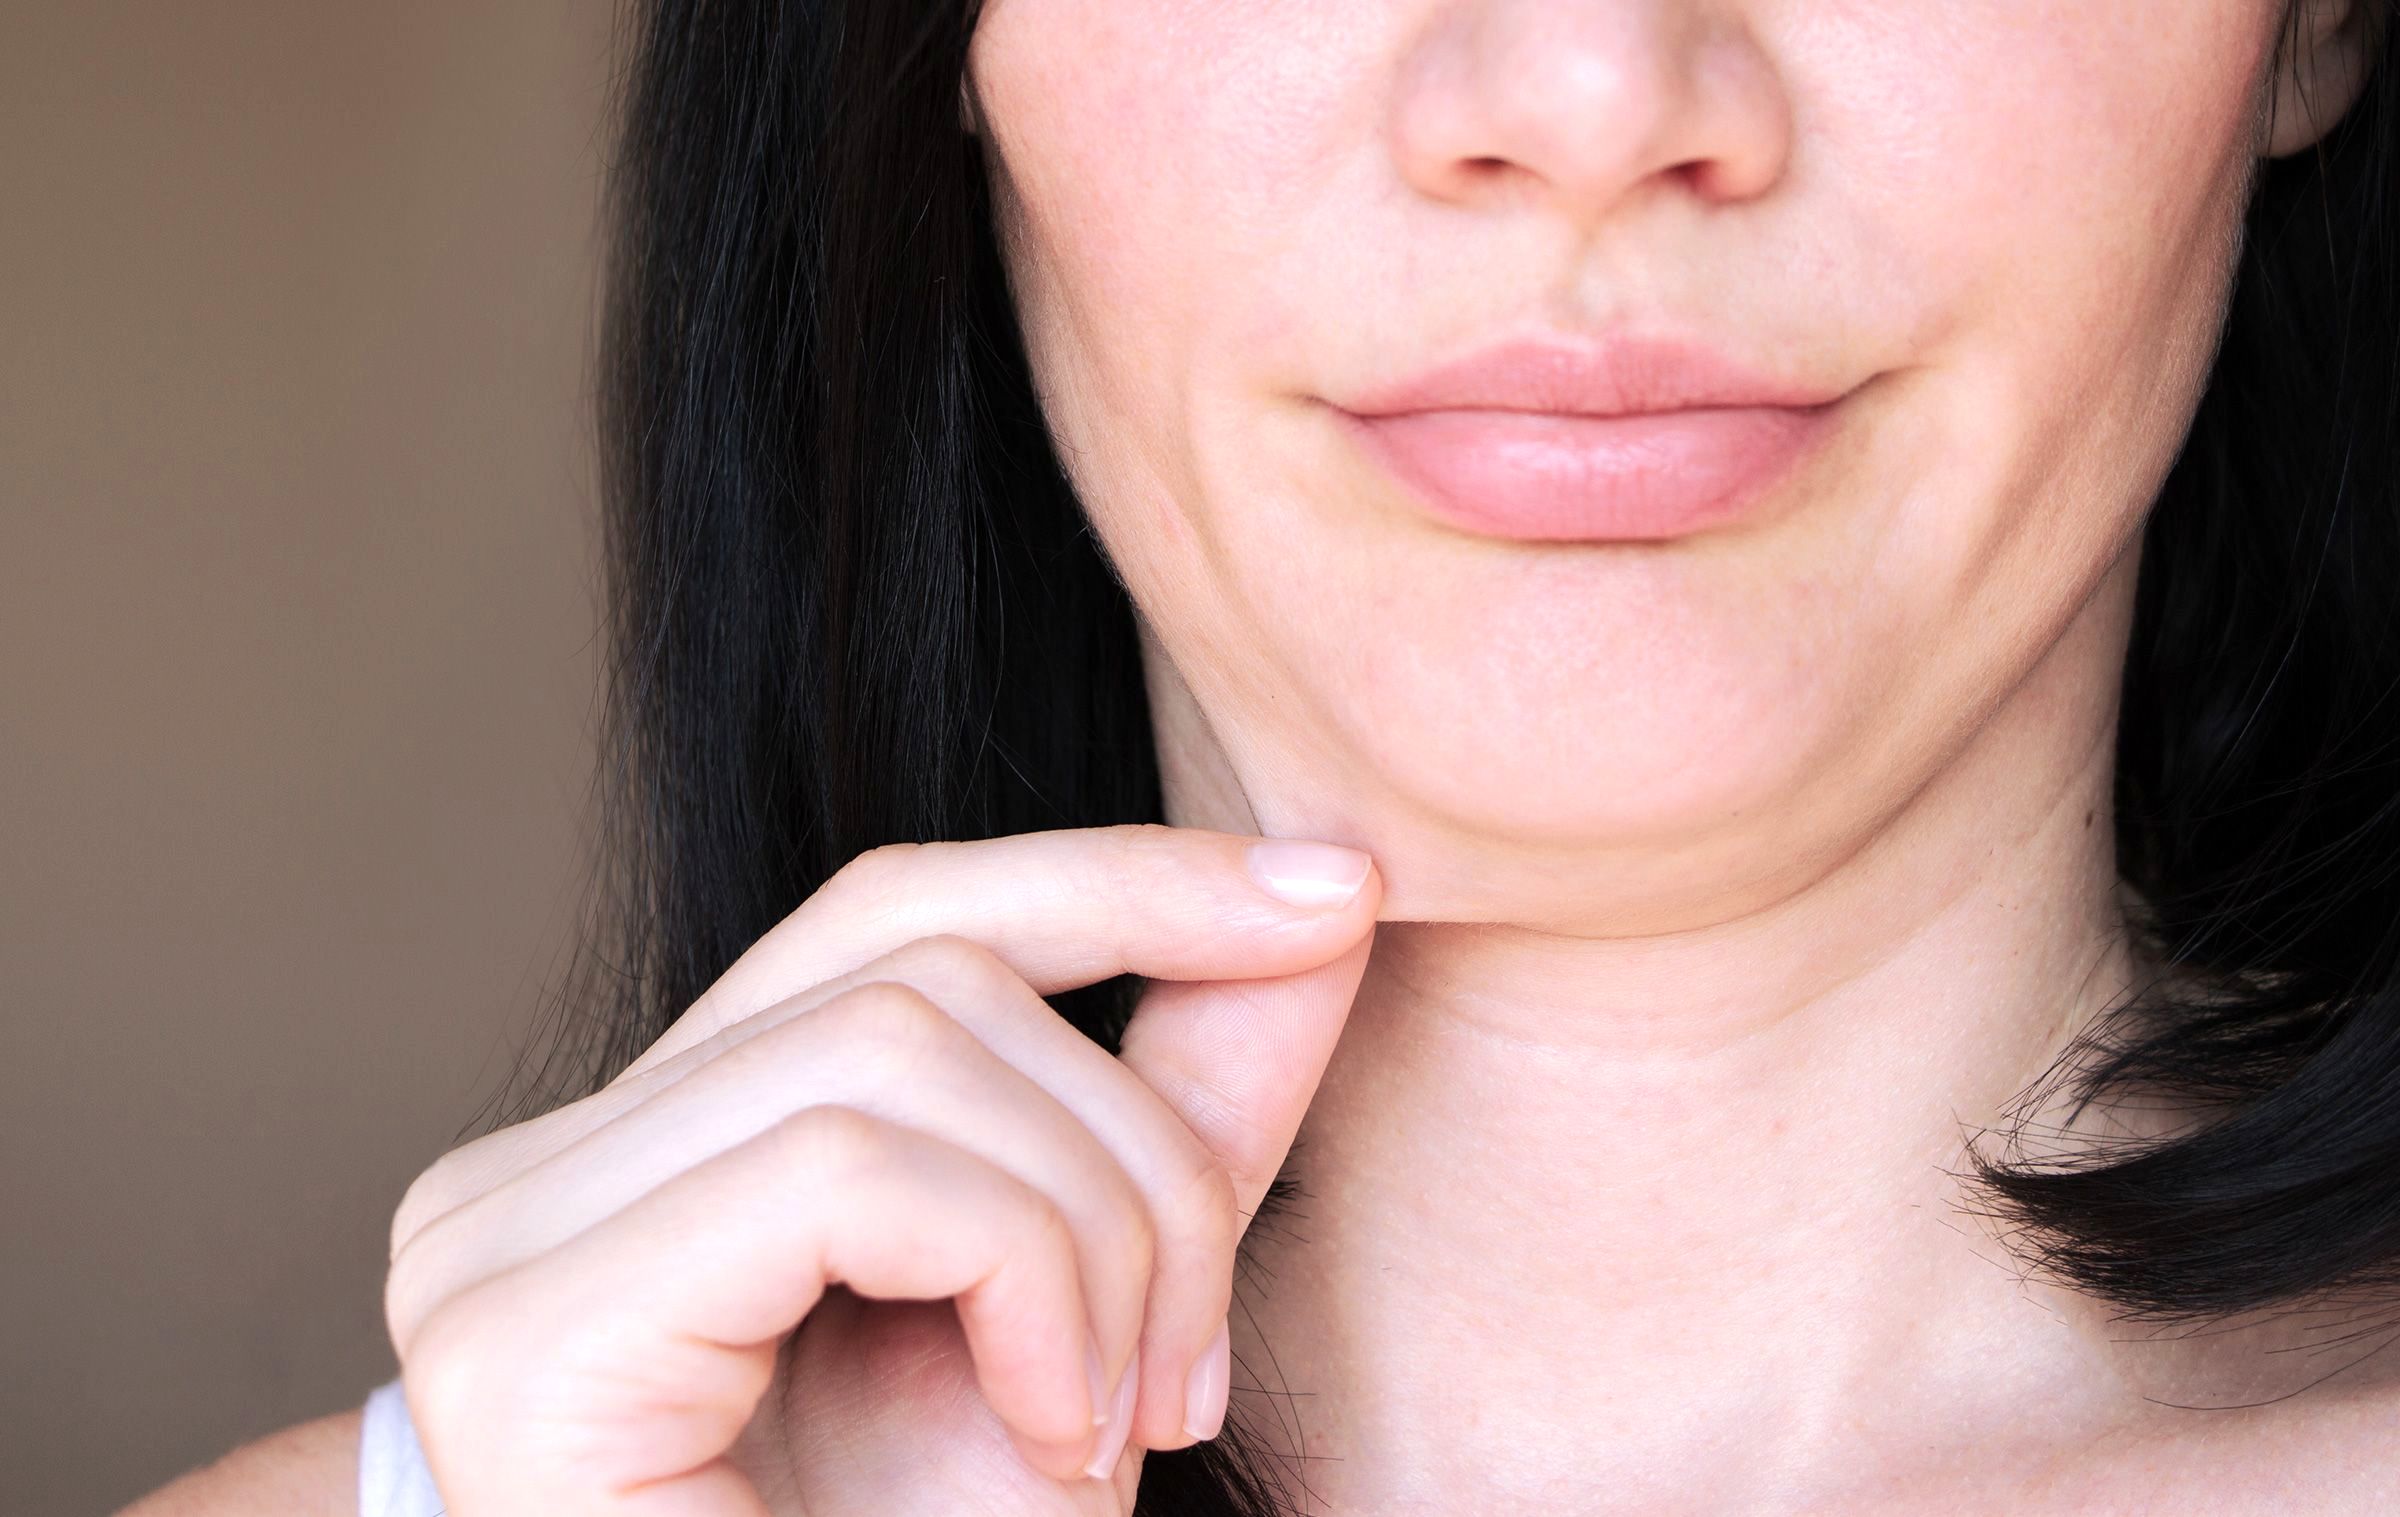 پوستی بدون افتادگی در سایه کاهش وزن: رازهایی برای تناسب اندام و زیبایی پایدار